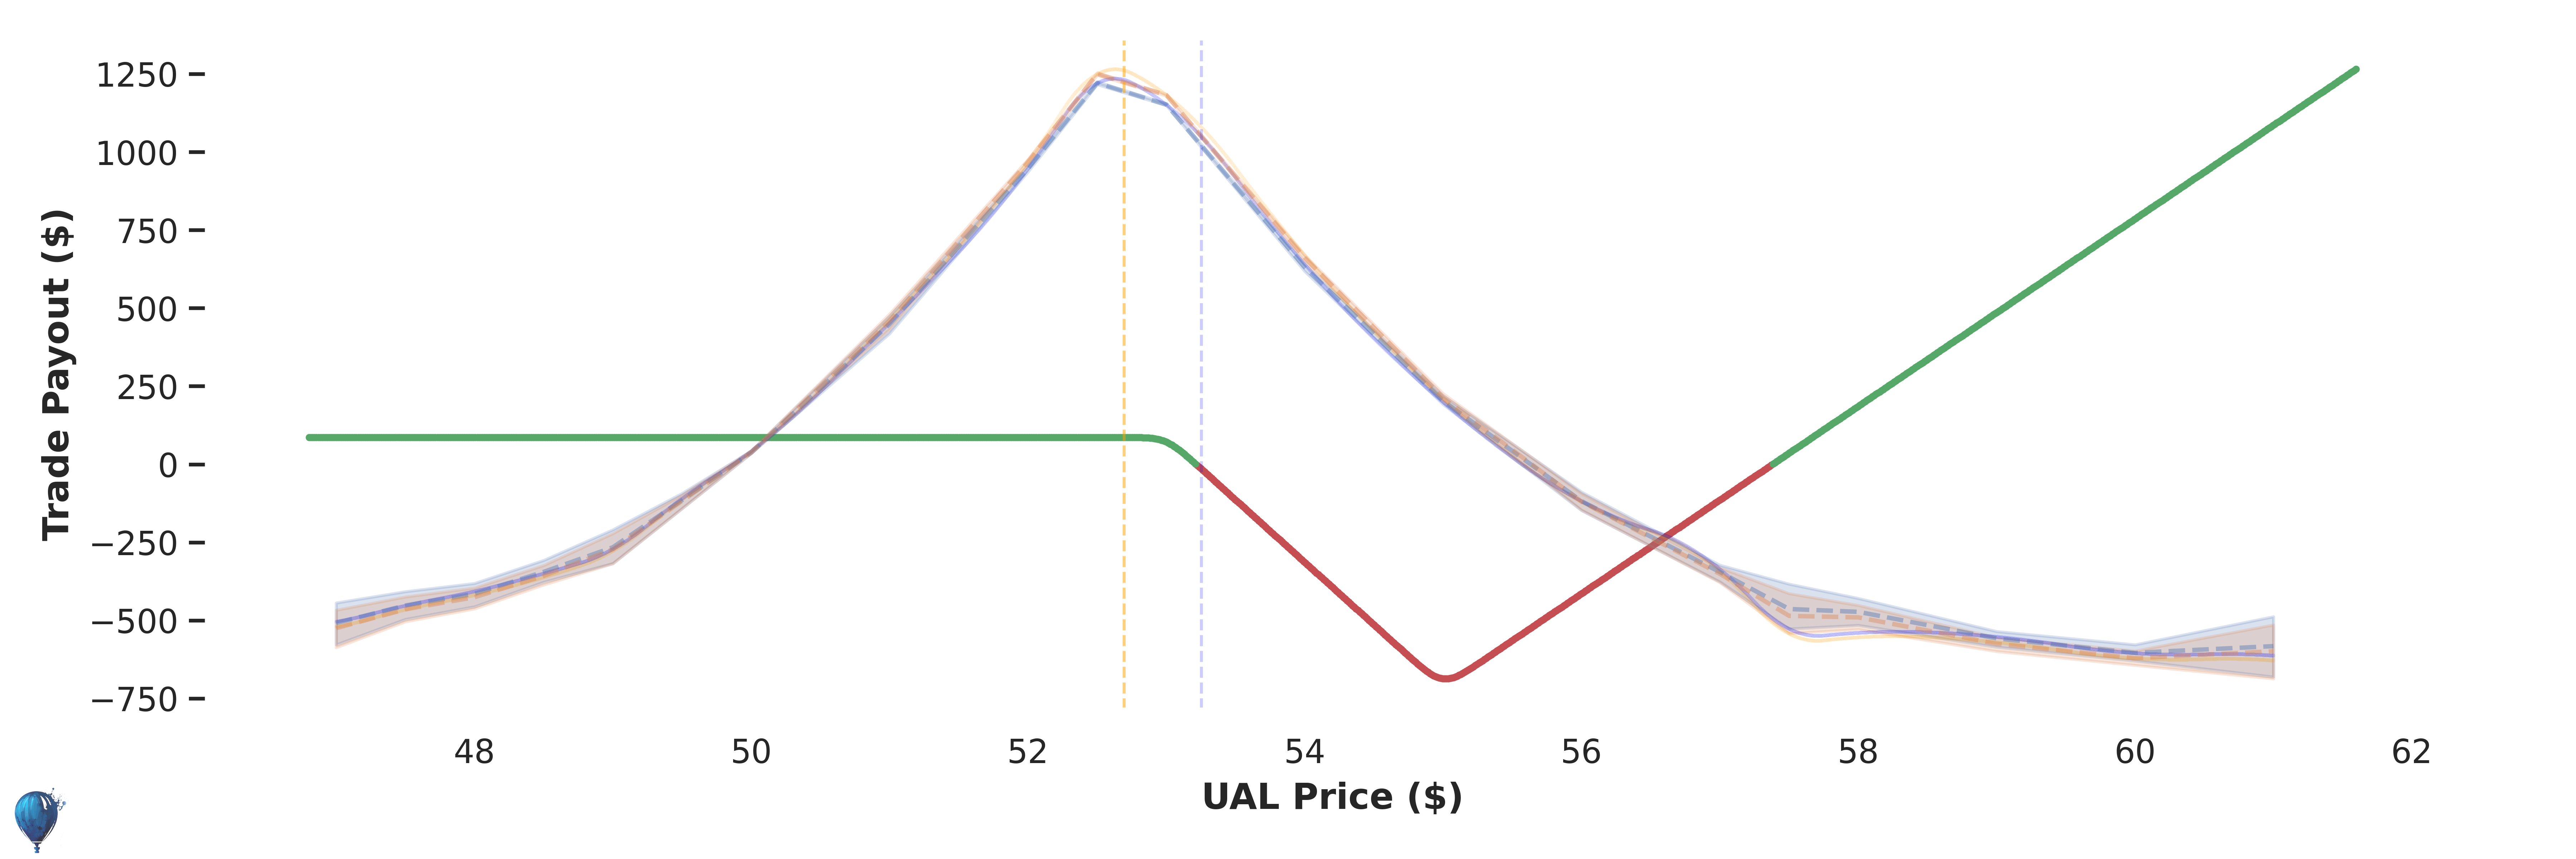 UAL trade payout at expiration